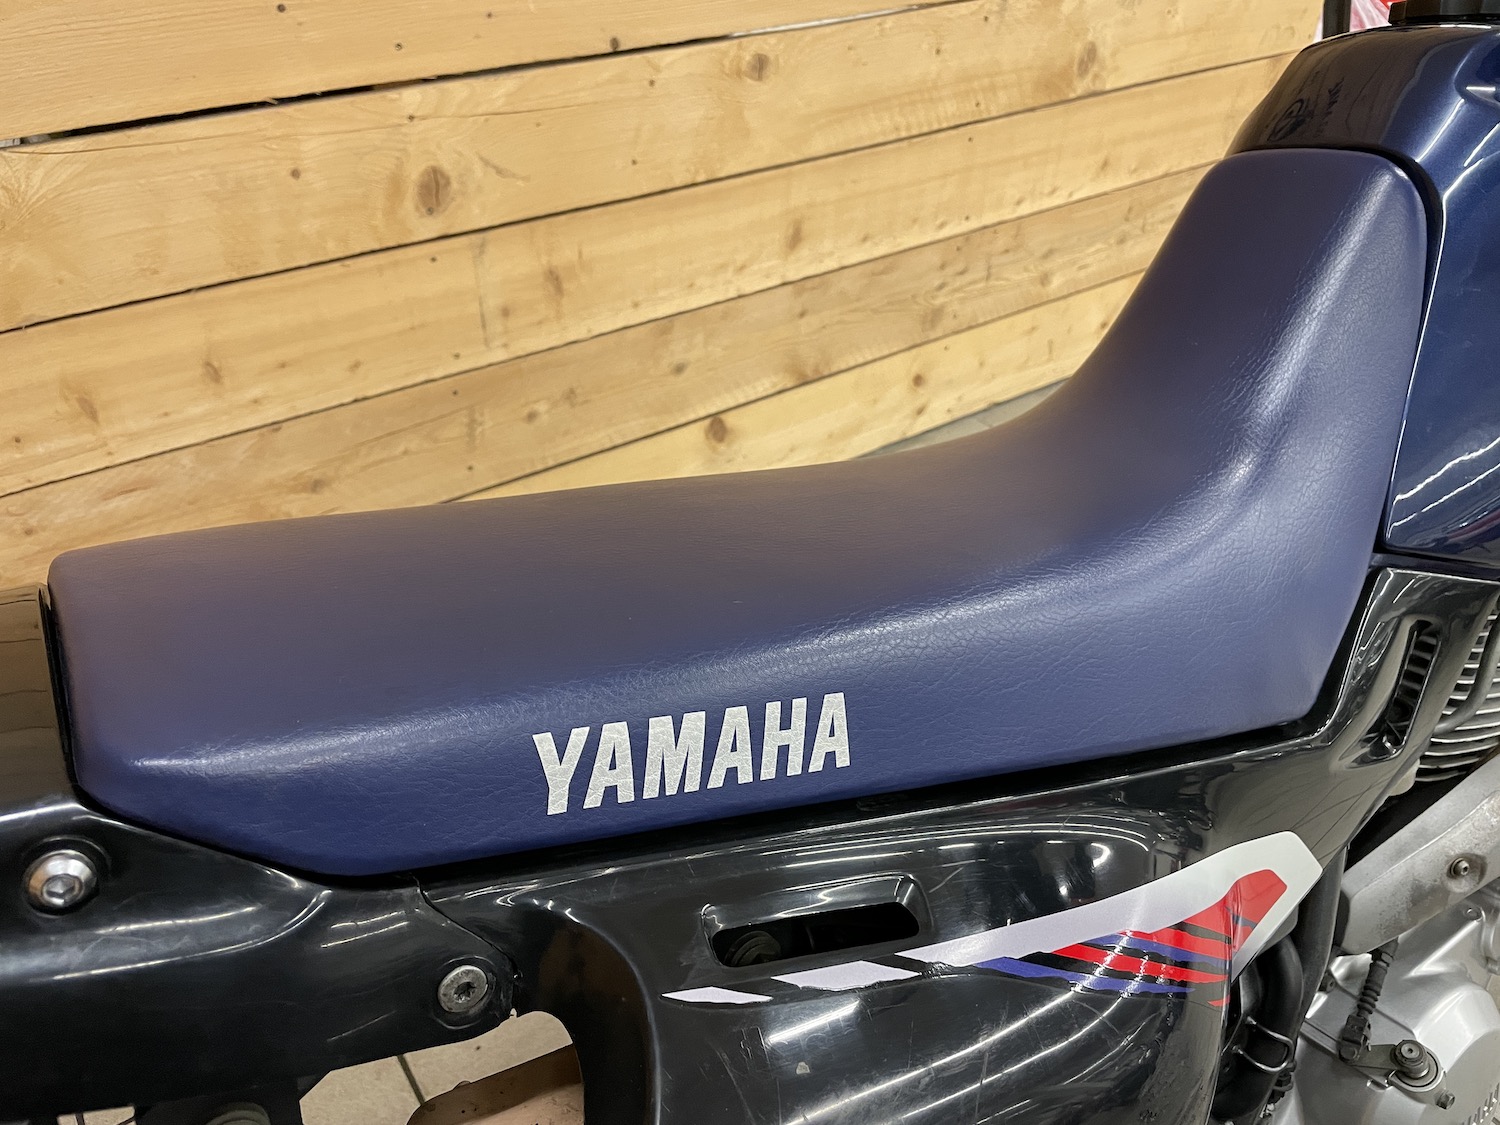 Yamaha_XT600_E_cezanne_classic_motorcycle-95.jpg